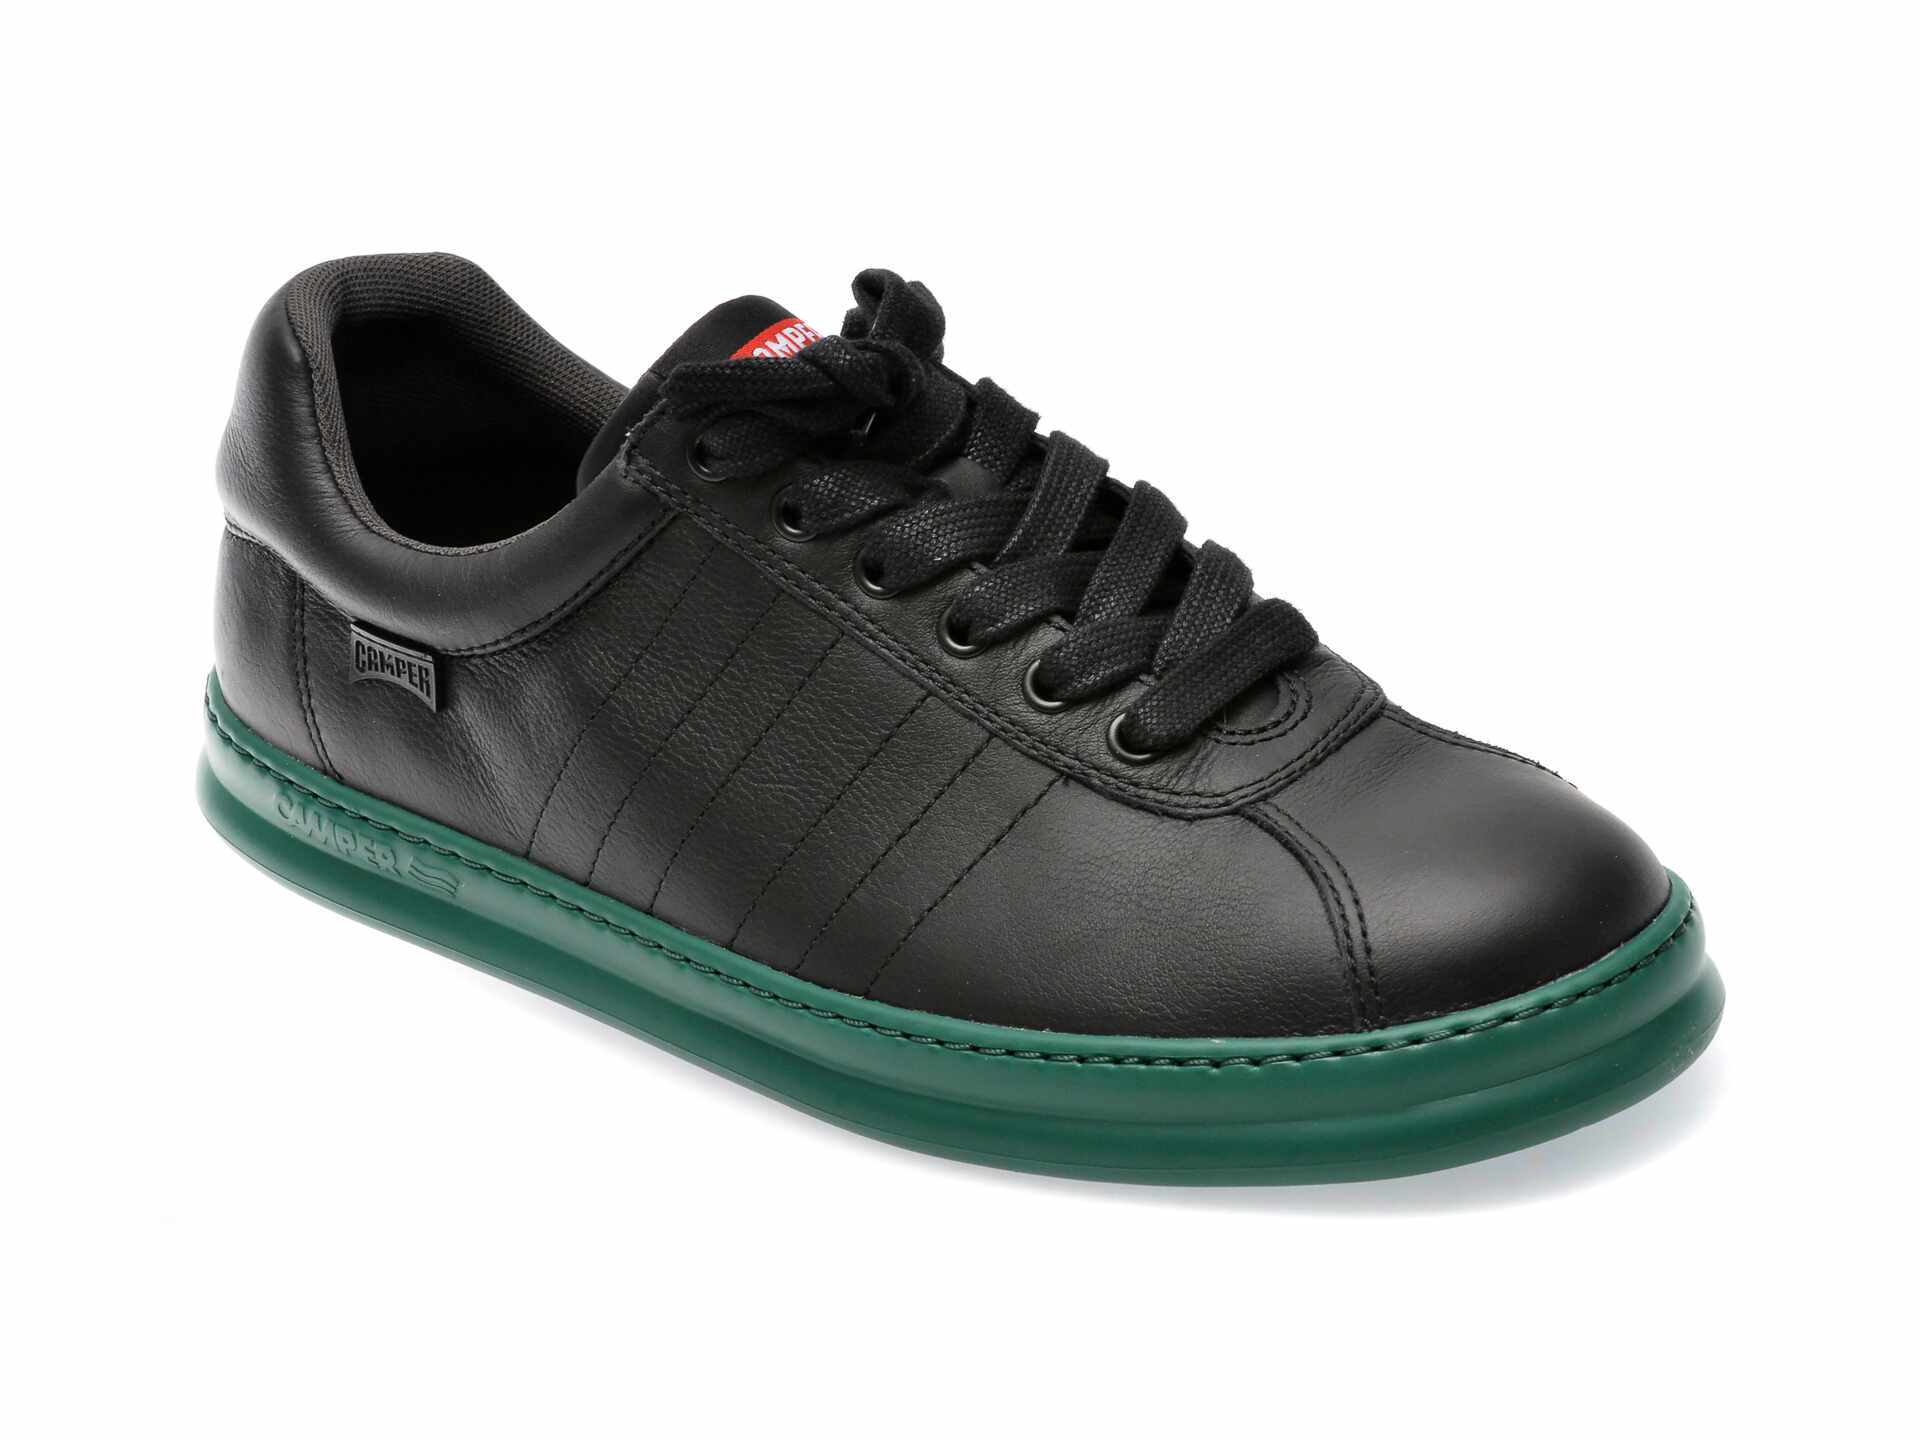 Pantofi CAMPER negri, K100227, din piele naturala